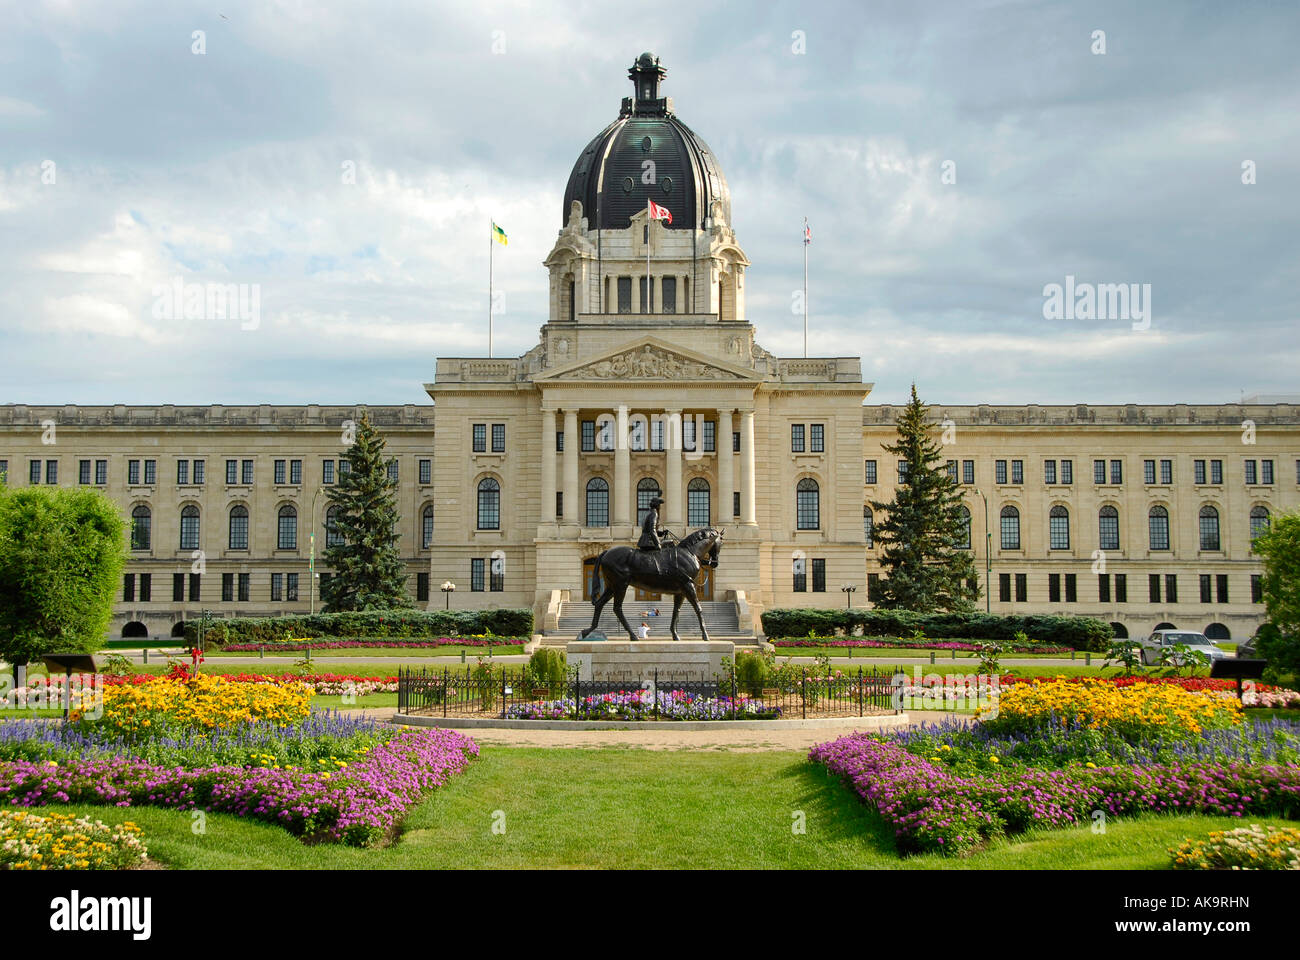 L'édifice législatif de la capitale provinciale de la Saskatchewan Regina, Canada et la reine Elizabeth II Centennial Gardens et statue Banque D'Images